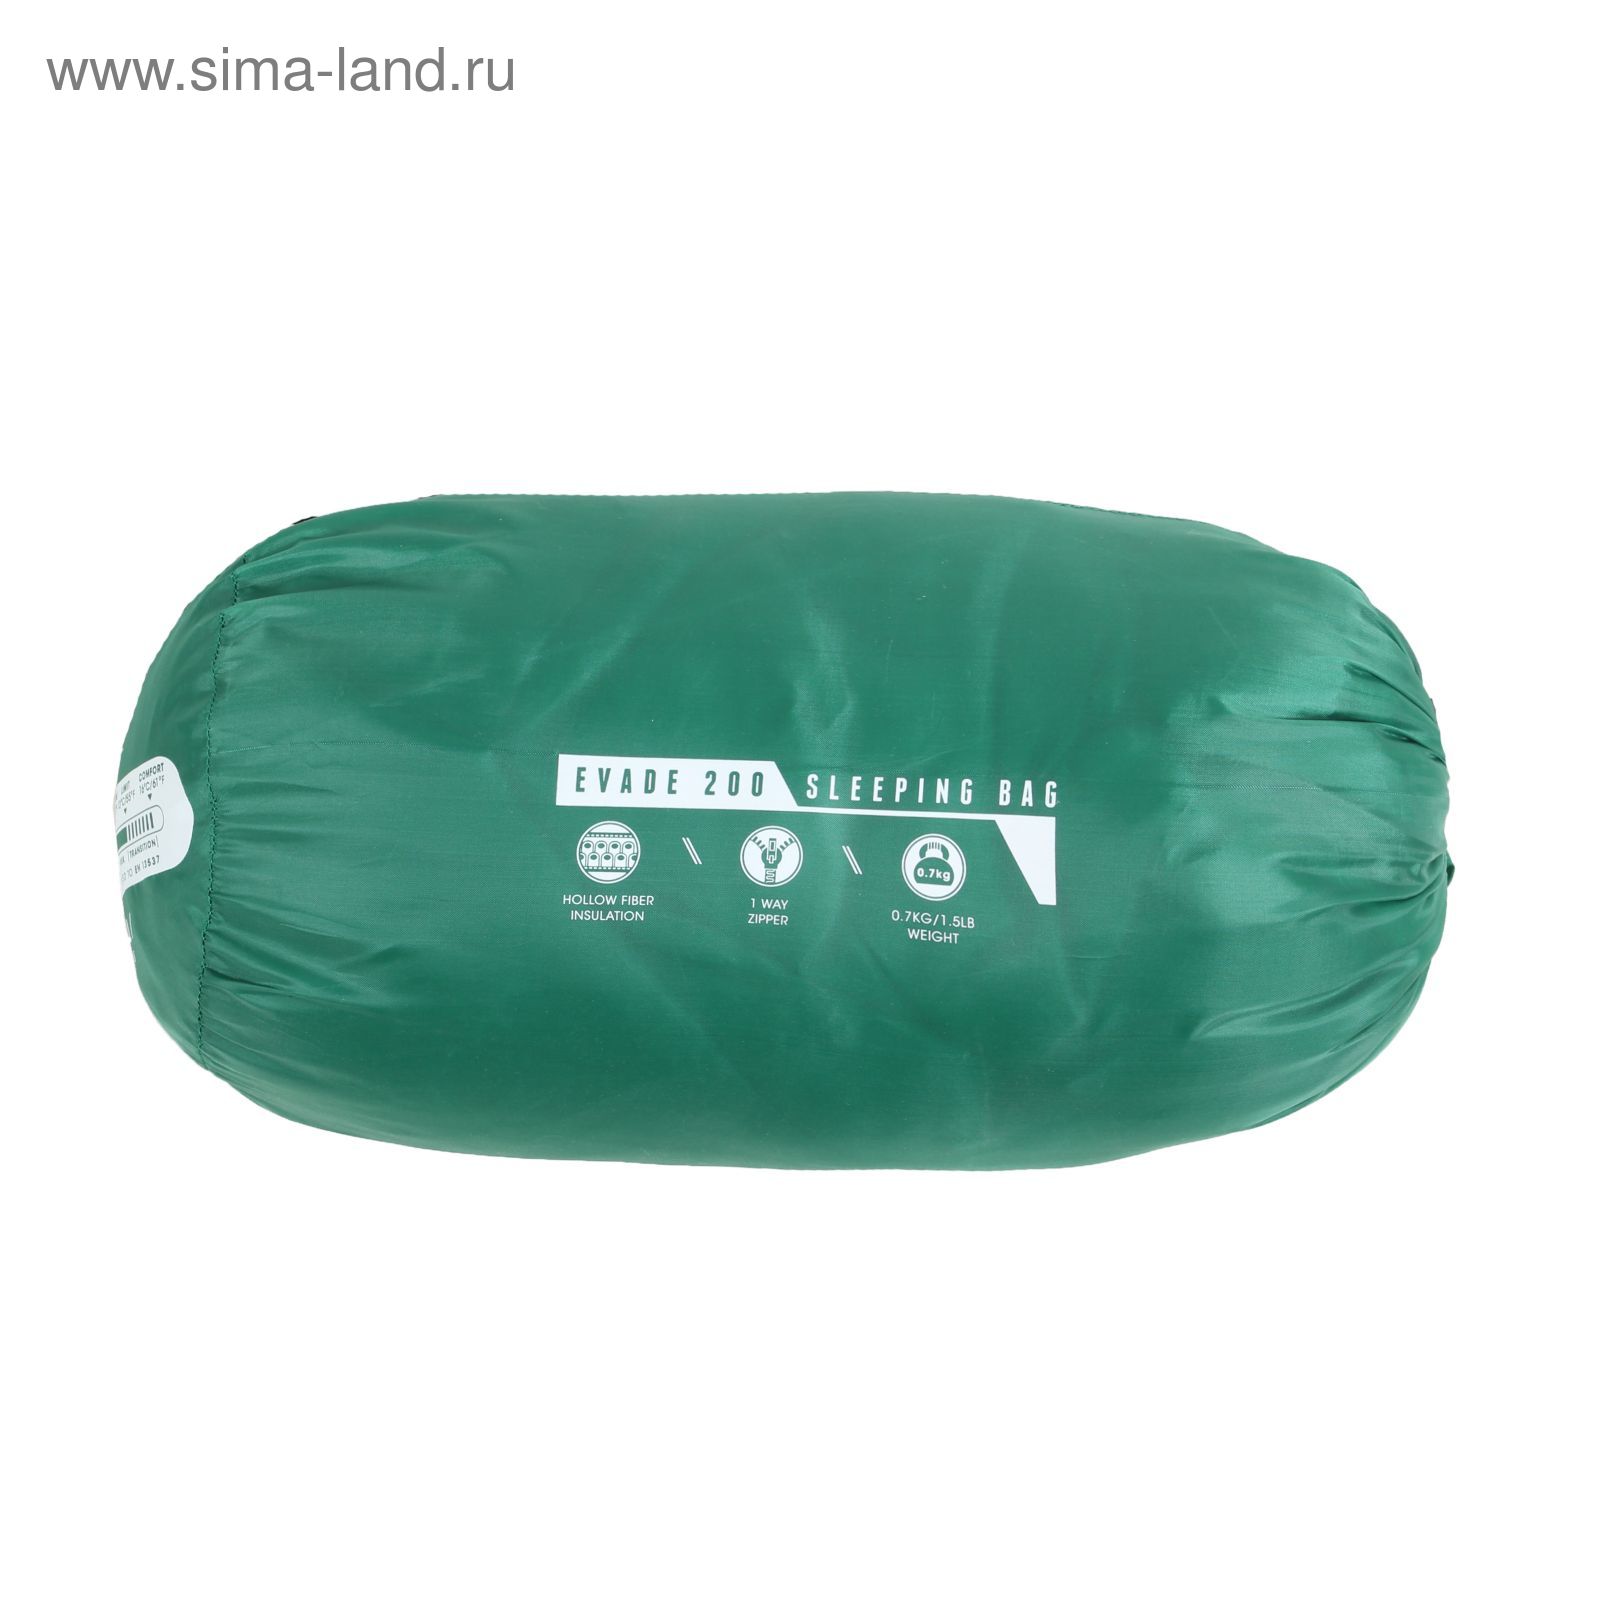 Спальный мешок Evade 200, 180х75 см, от 13°C до 16°C, МИКС